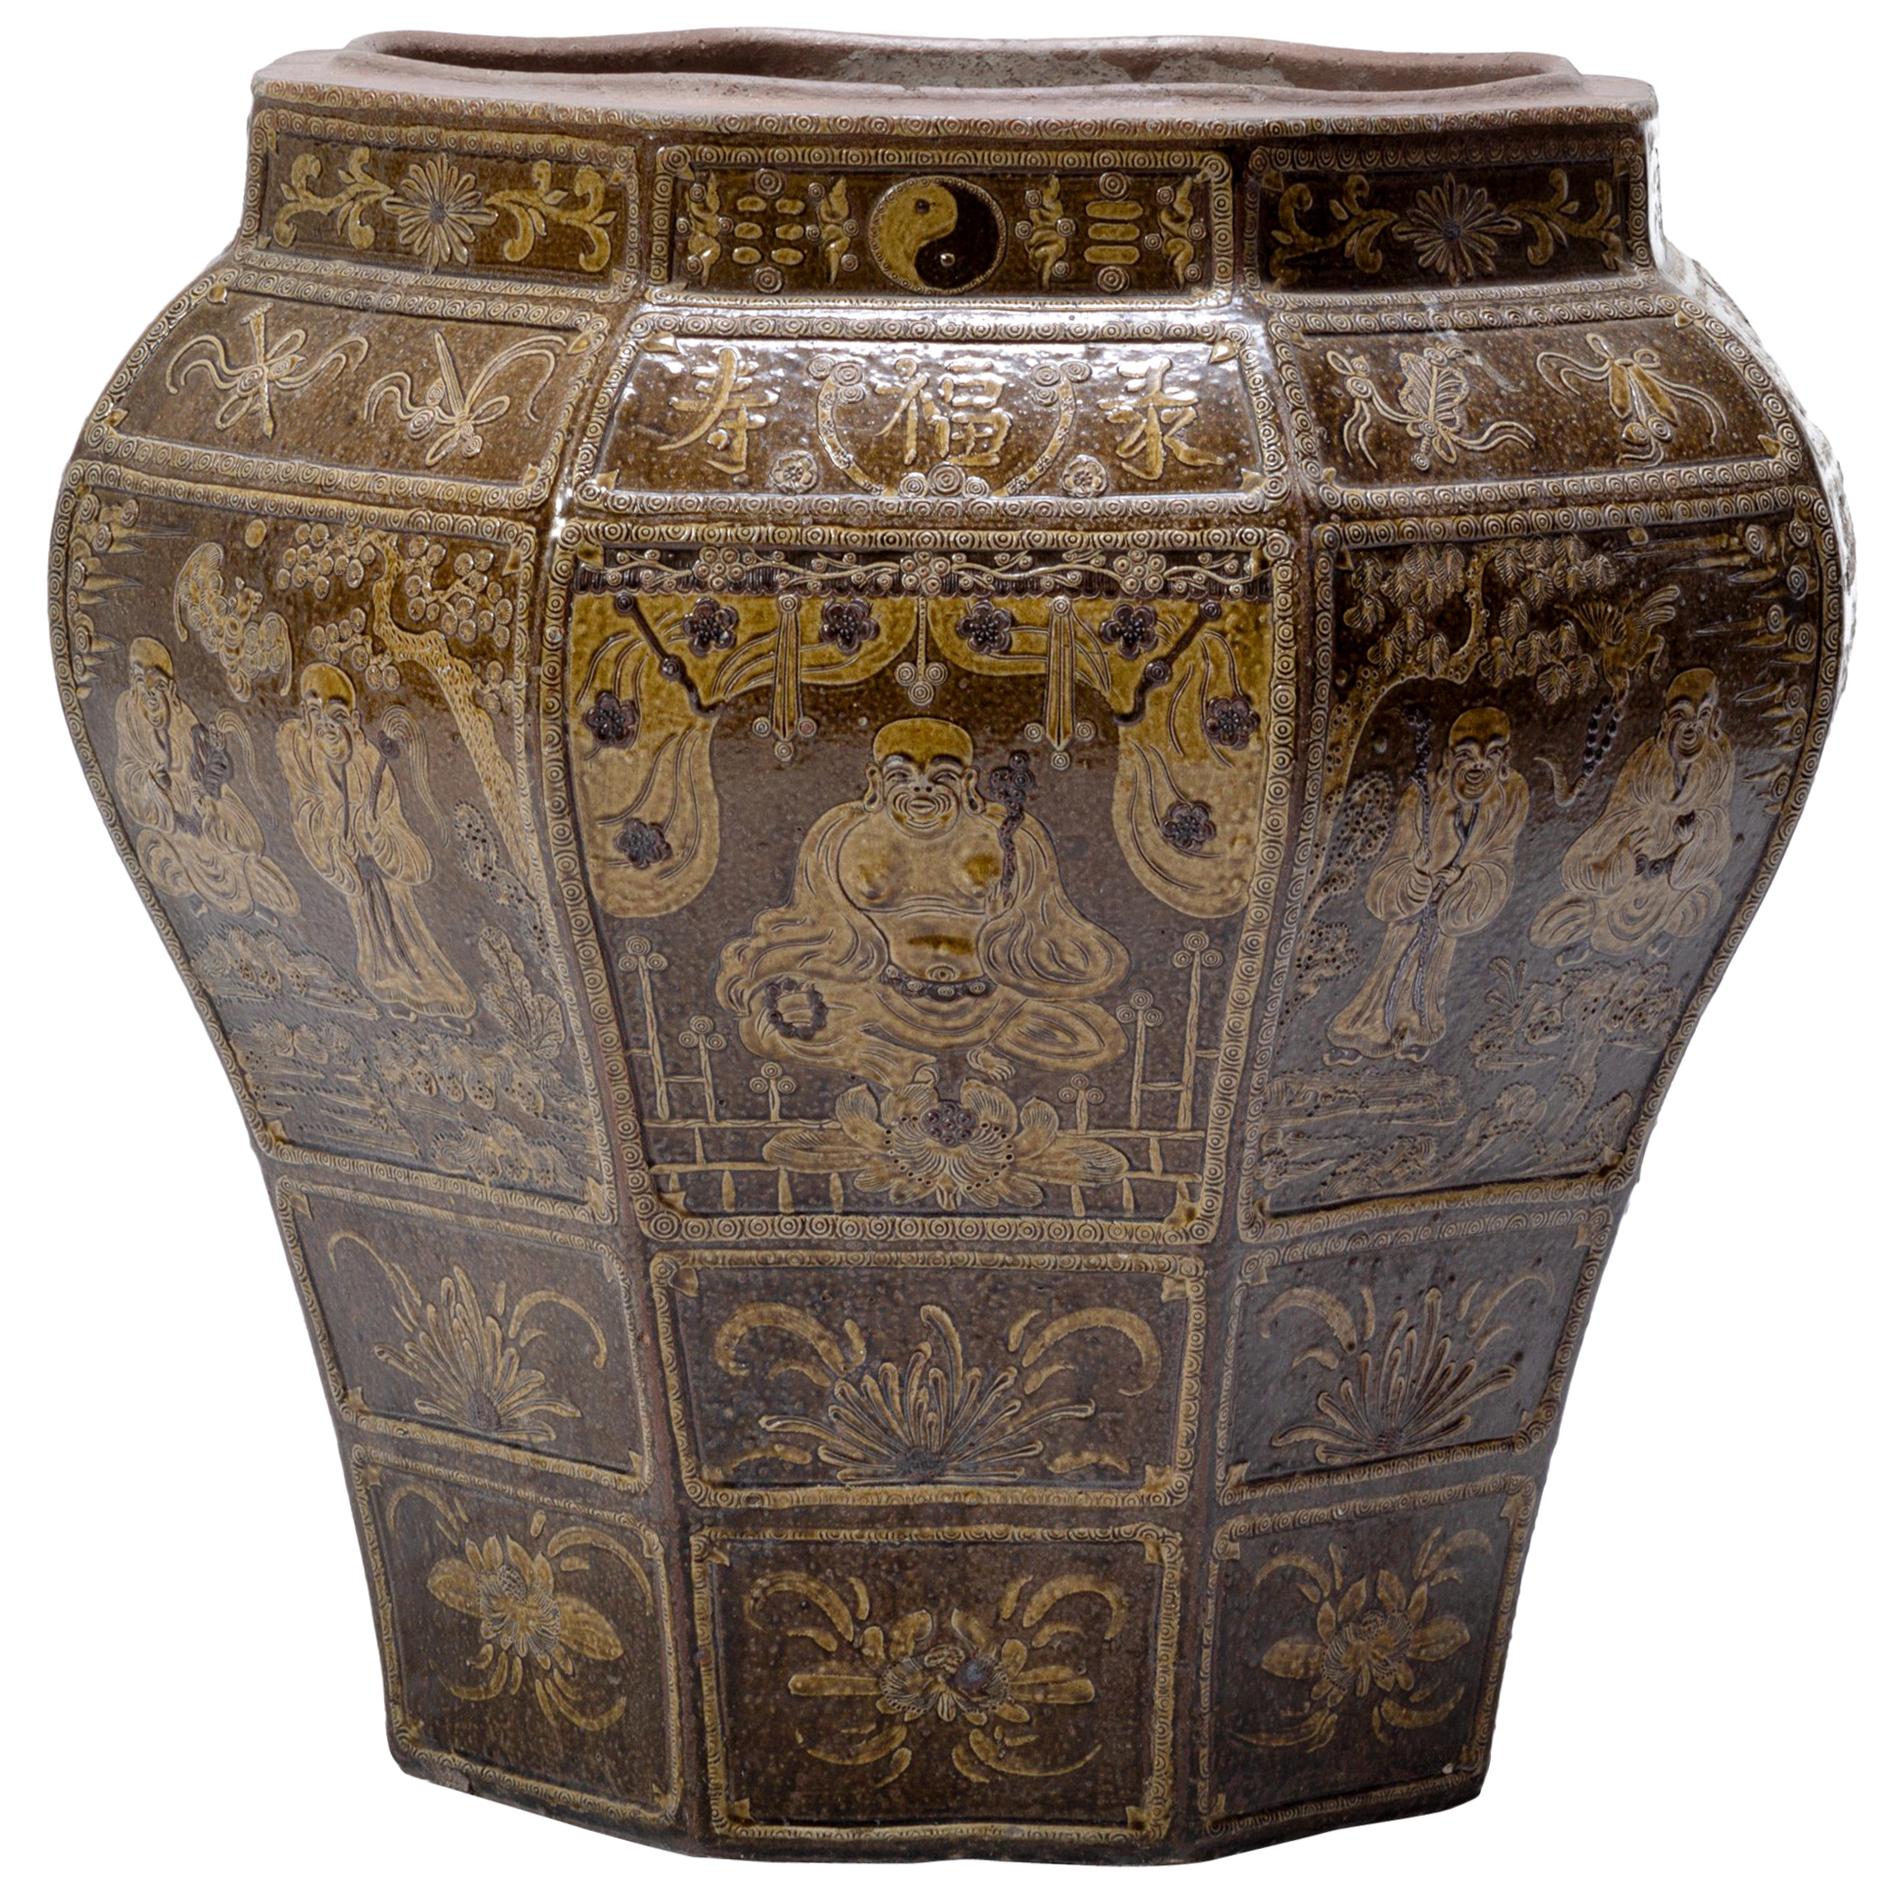 19th Century Grand Chinese Glazed Urn